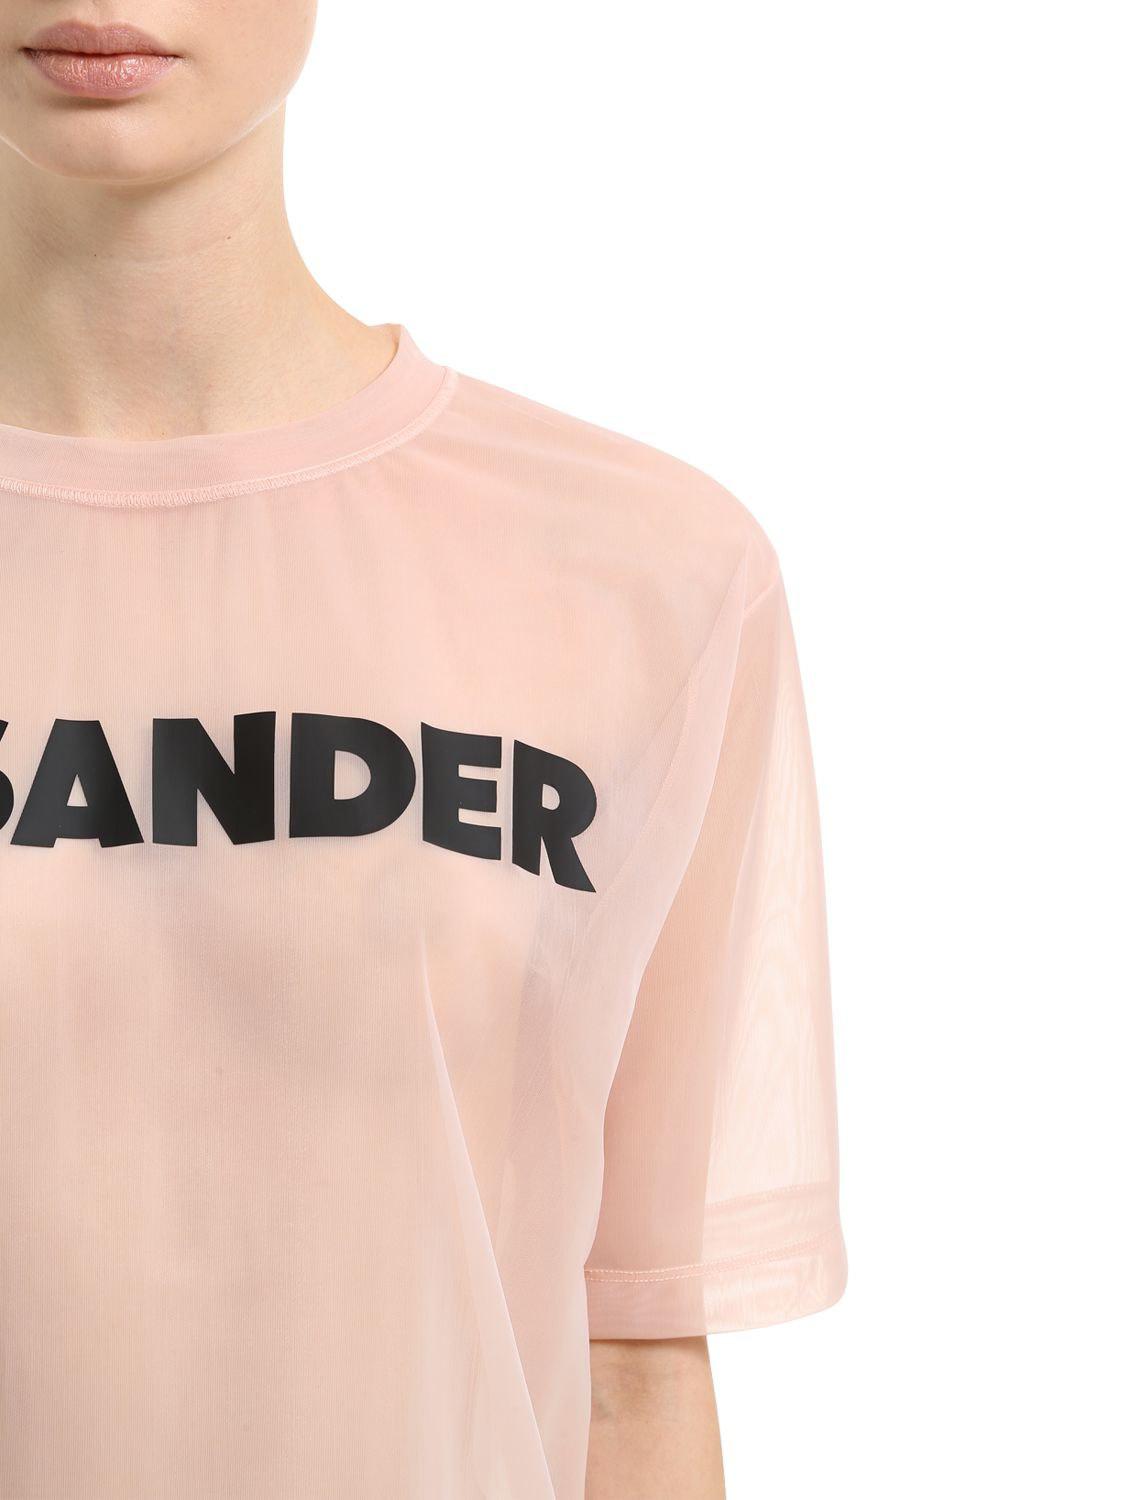 Jil Sander Oversized Logo Print Sheer Nylon T-shirt in Pink | Lyst